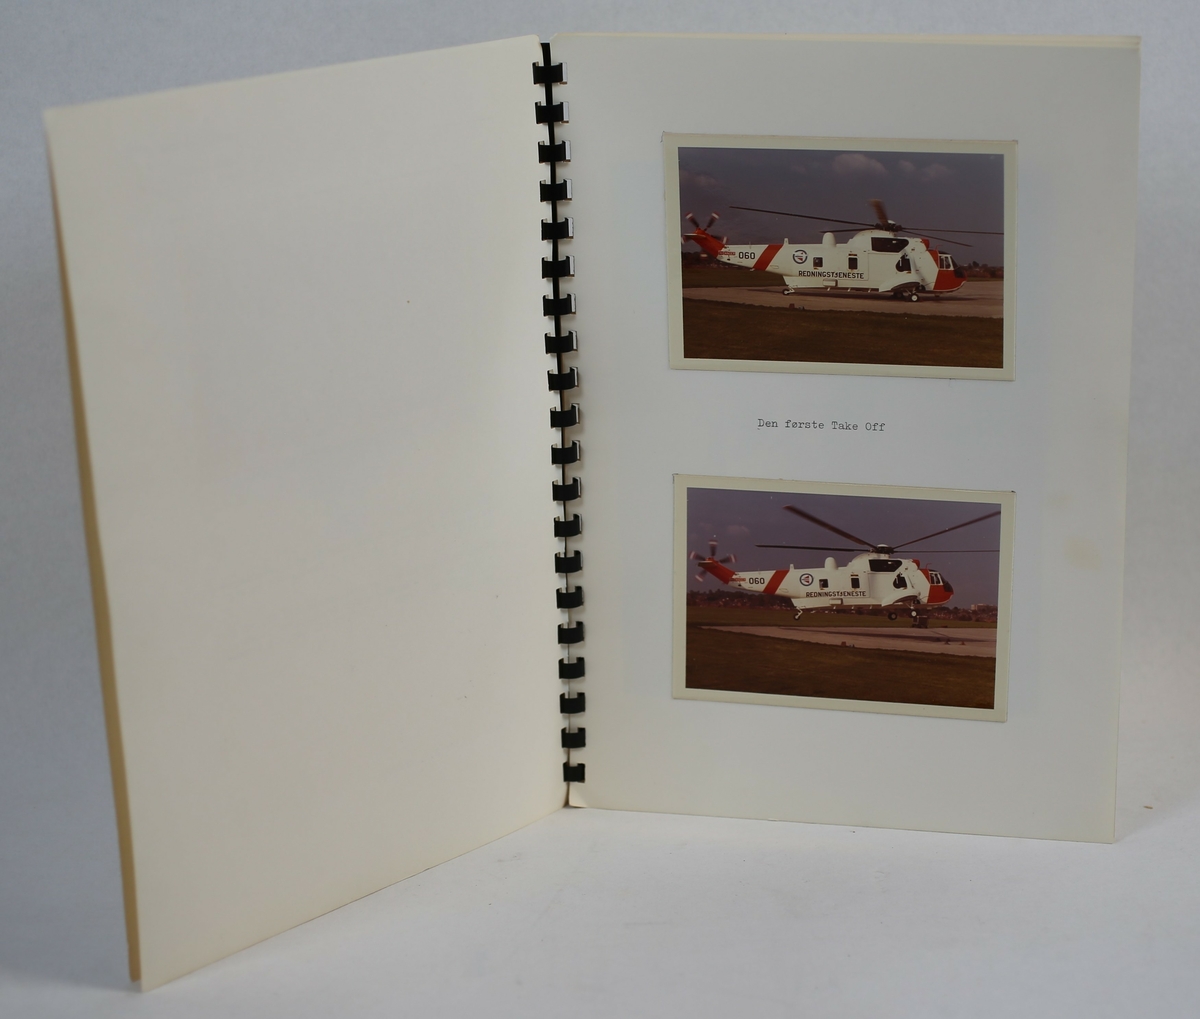 Fotoalbumet inneholder 5 foto av Sea King nr 060, 3 i farger og 2 sort/hvit.